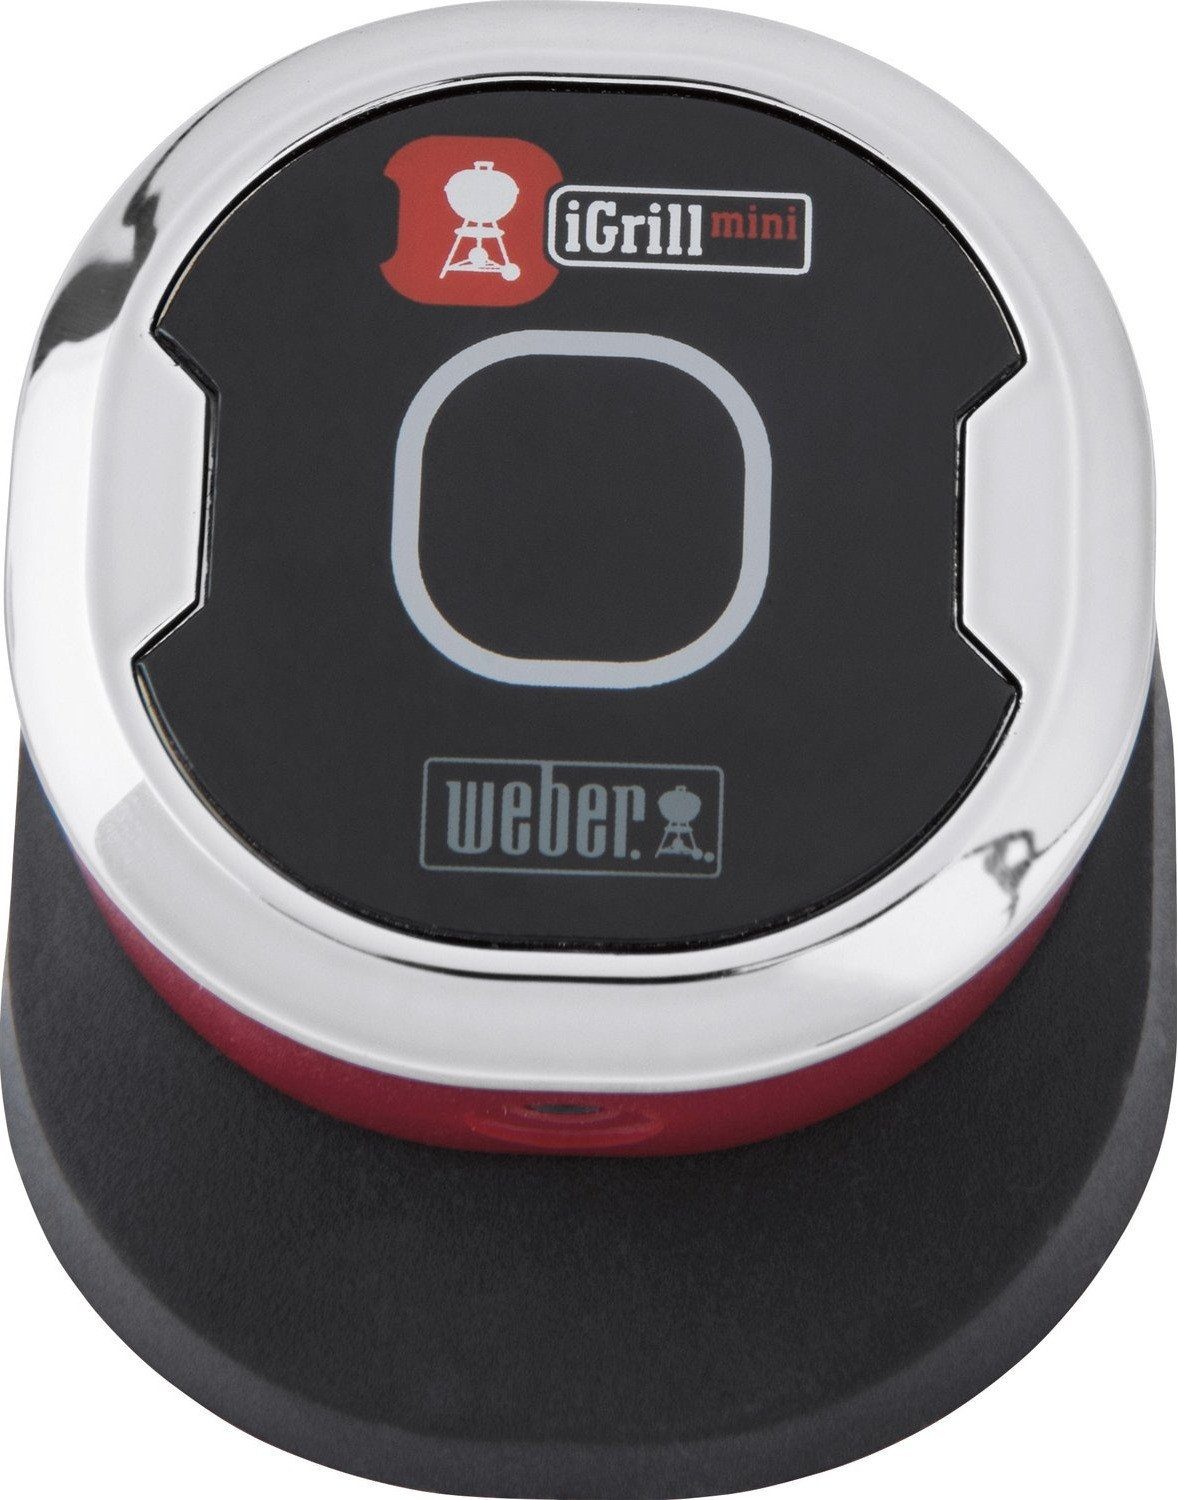 Weber Grillthermometer 7220 iGrill mini